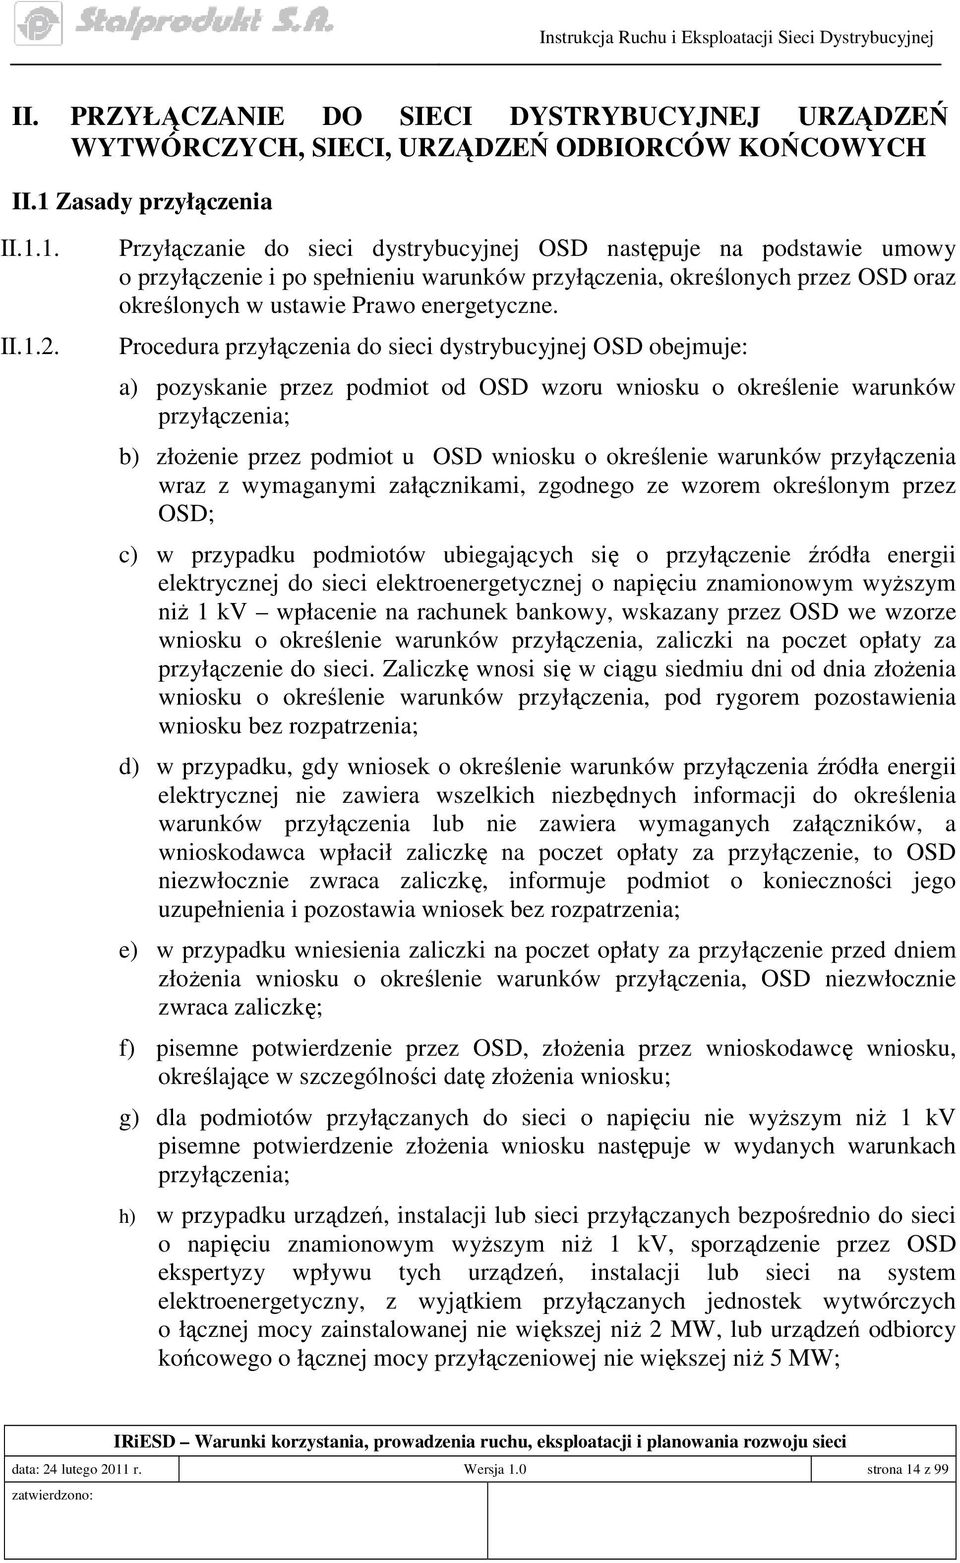 Procedura przyłączenia do sieci dystrybucyjnej OSD obejmuje: a) pozyskanie przez podmiot od OSD wzoru wniosku o określenie warunków przyłączenia; b) złoŝenie przez podmiot u OSD wniosku o określenie